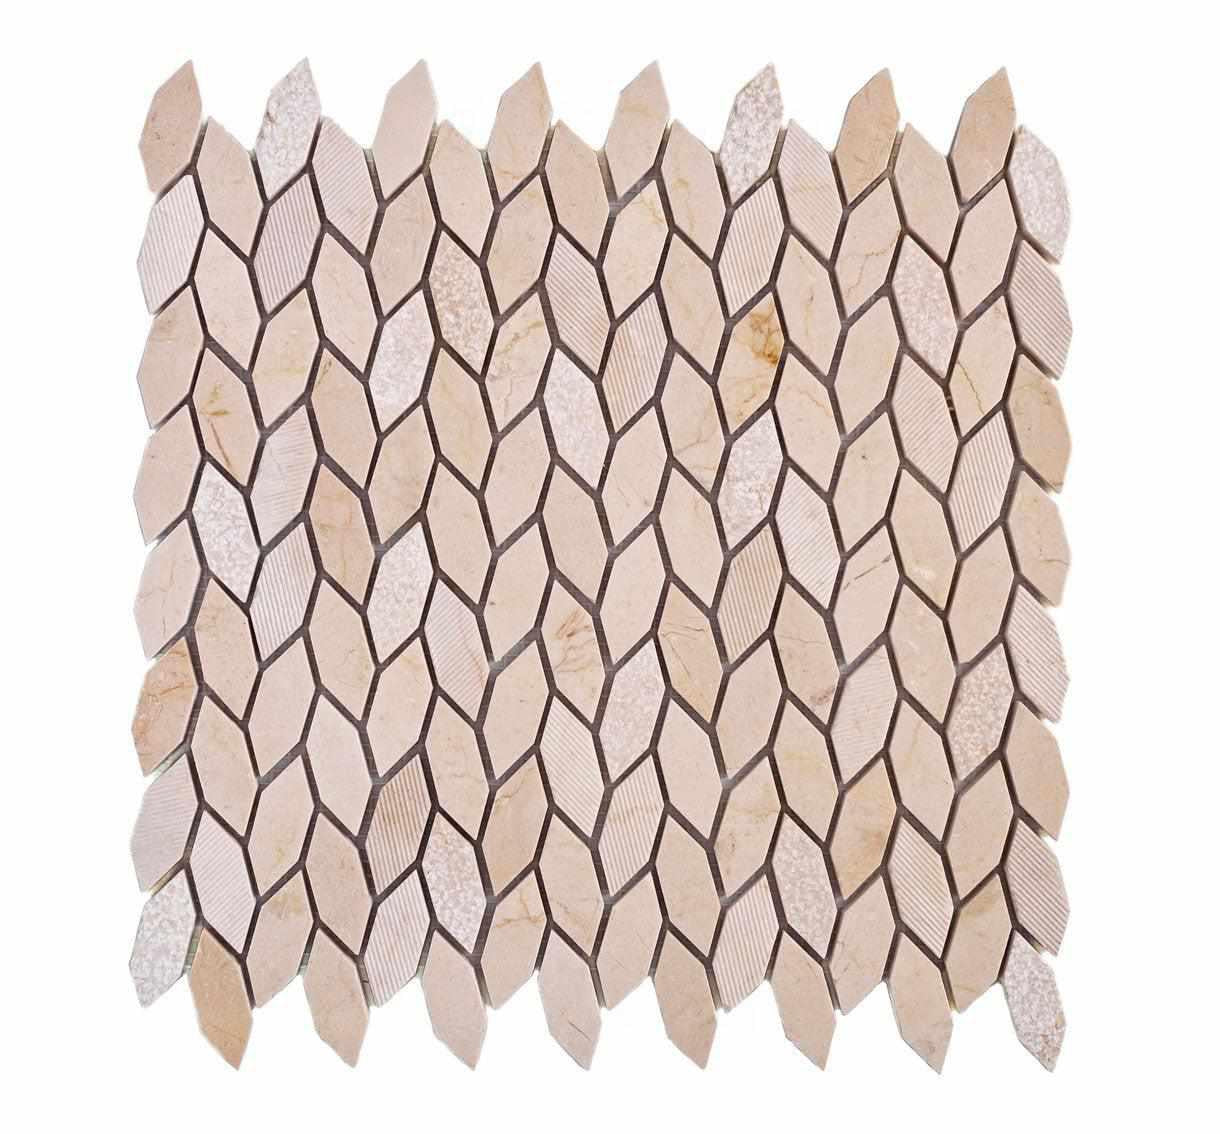 Textured Crema Marfil Leaf Marble Mosaic Tile Sample